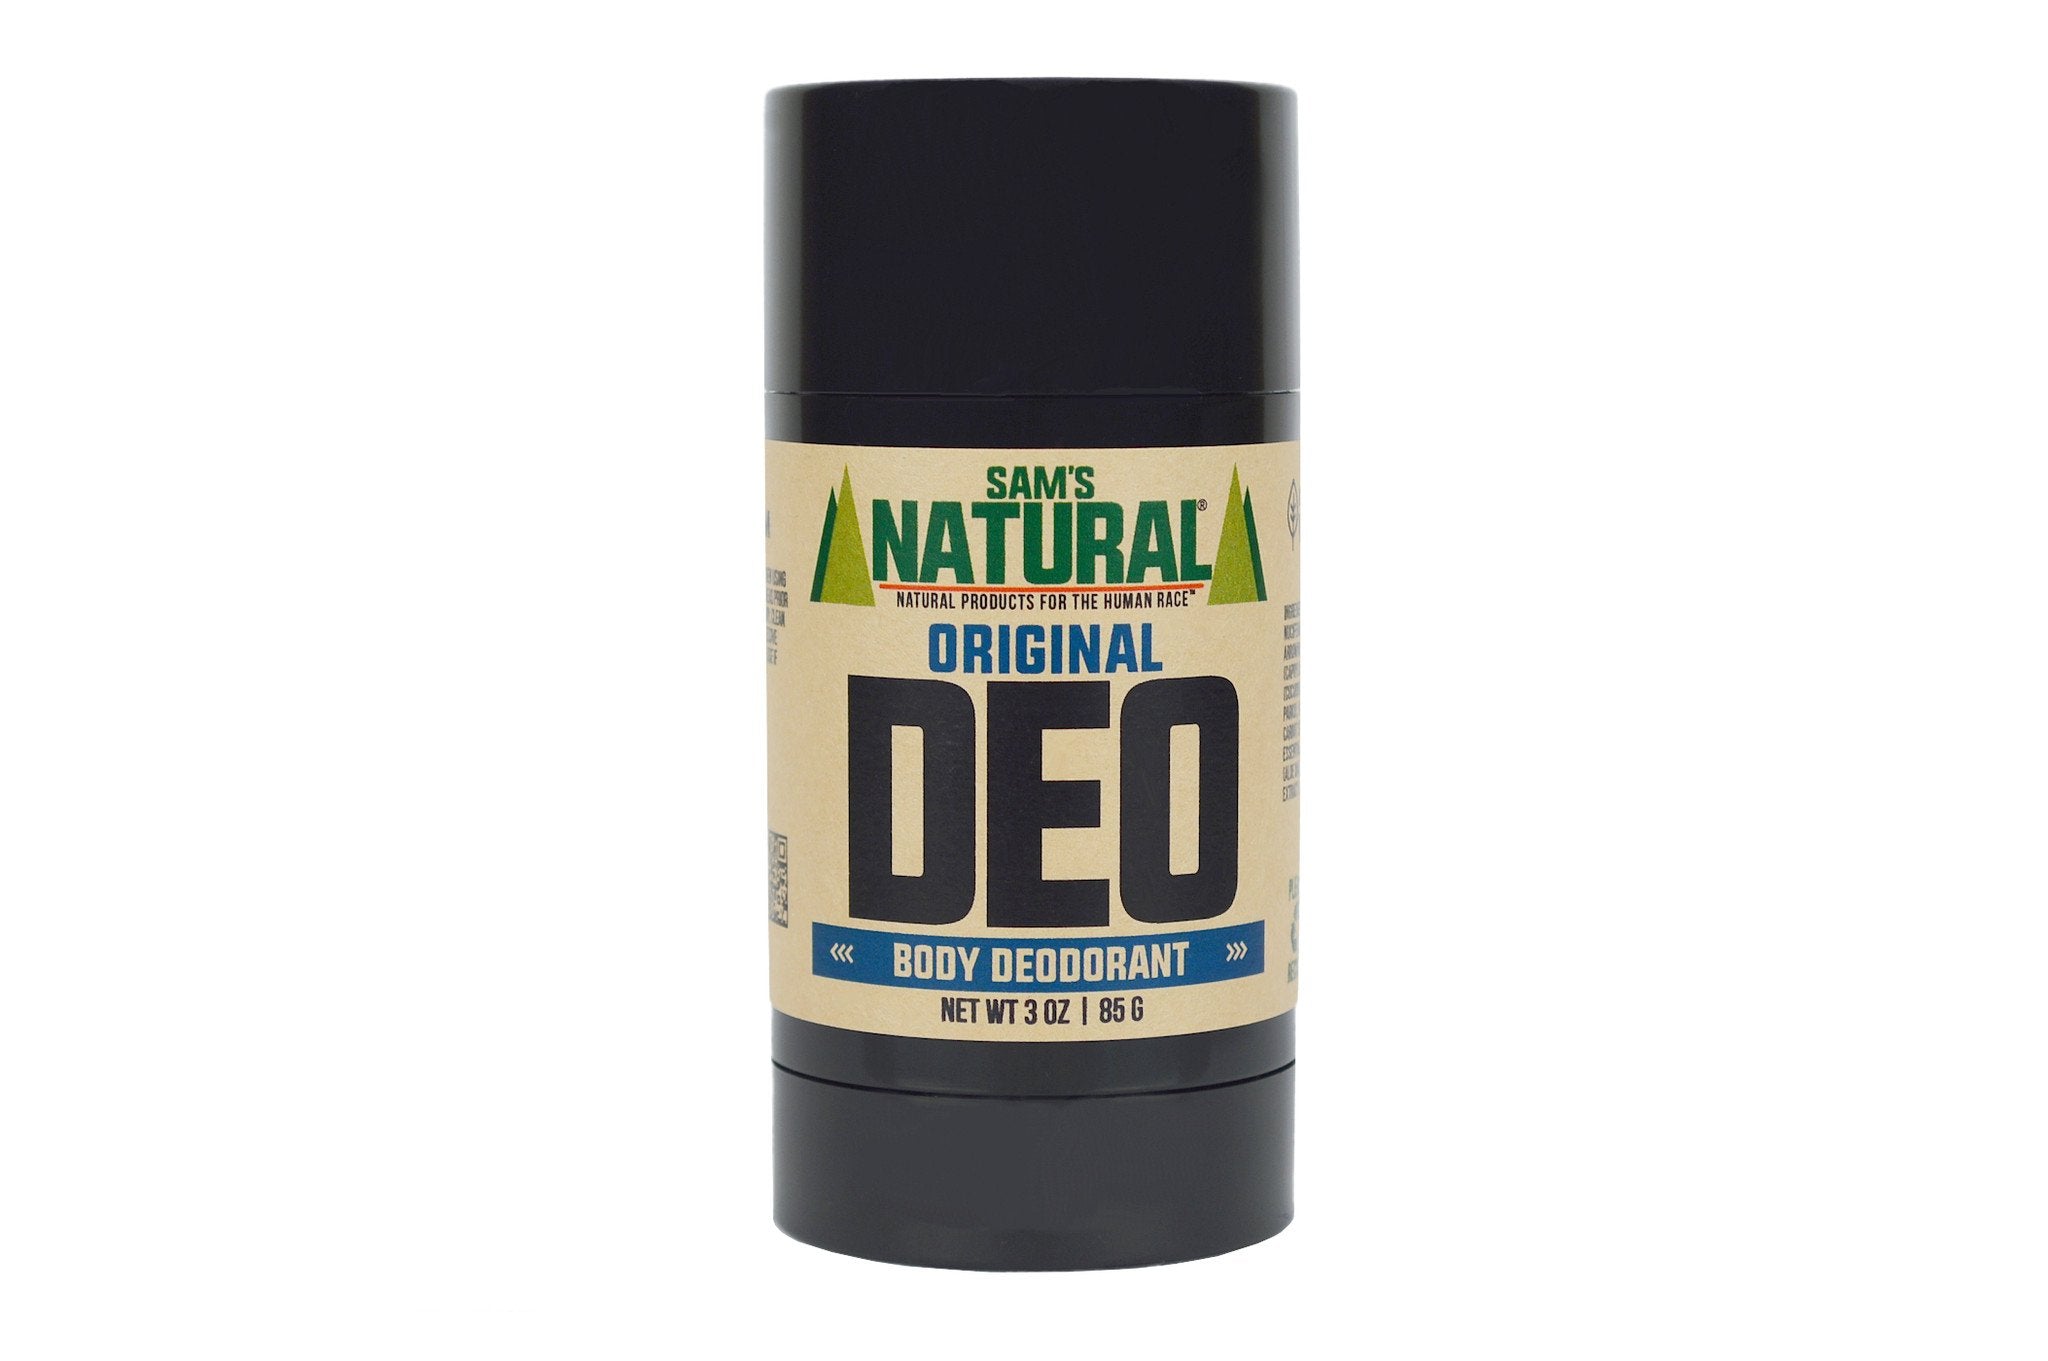 Men's Natural Deodorant